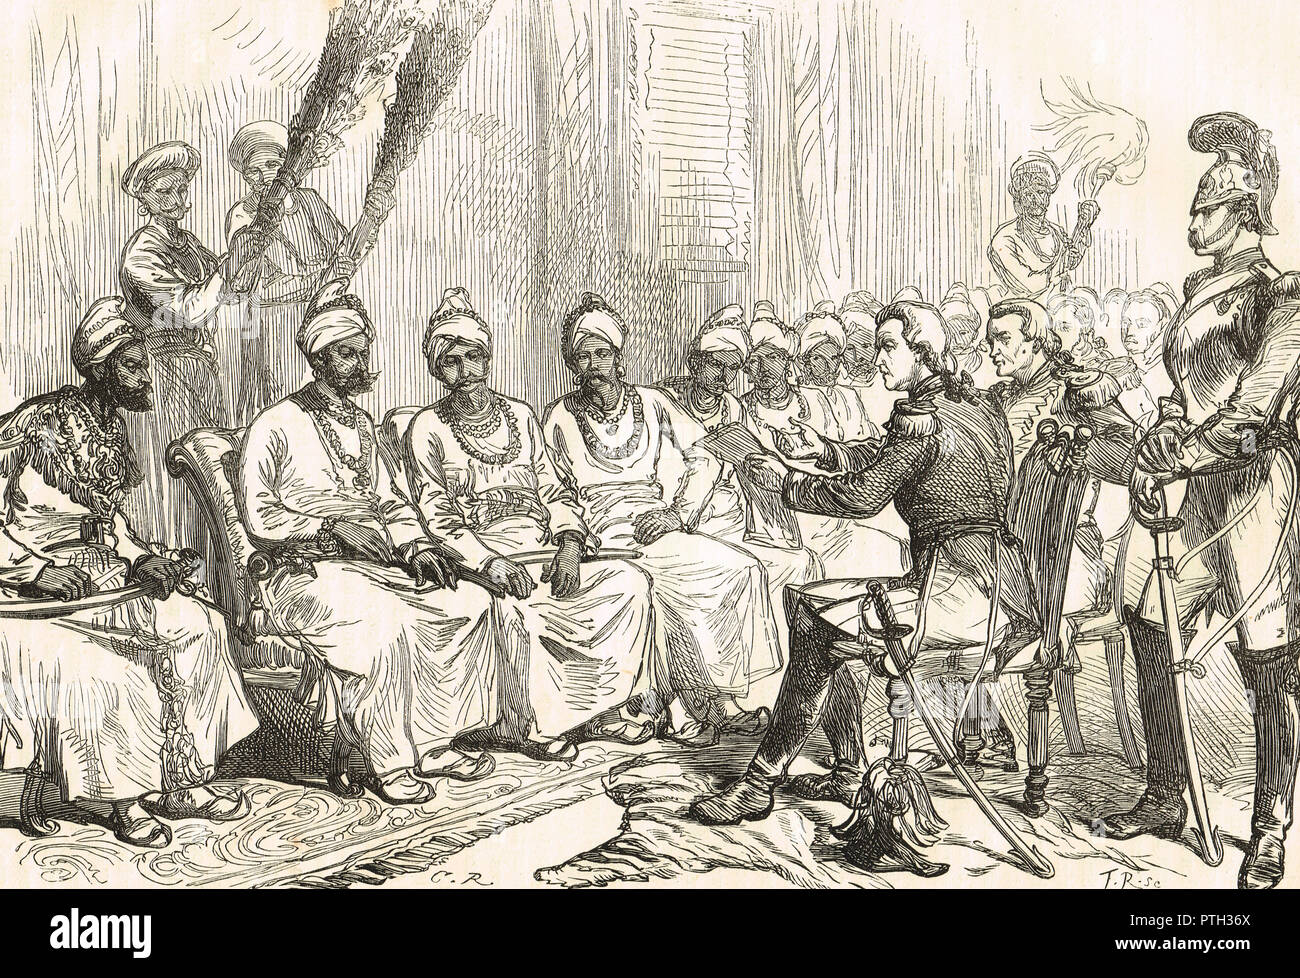 Les négociations de paix entre les représentants britanniques et birmans, menant au Traité de Yandabo dans 24 février 1826, après la défaite de la Birmanie à la bataille de Prome Banque D'Images